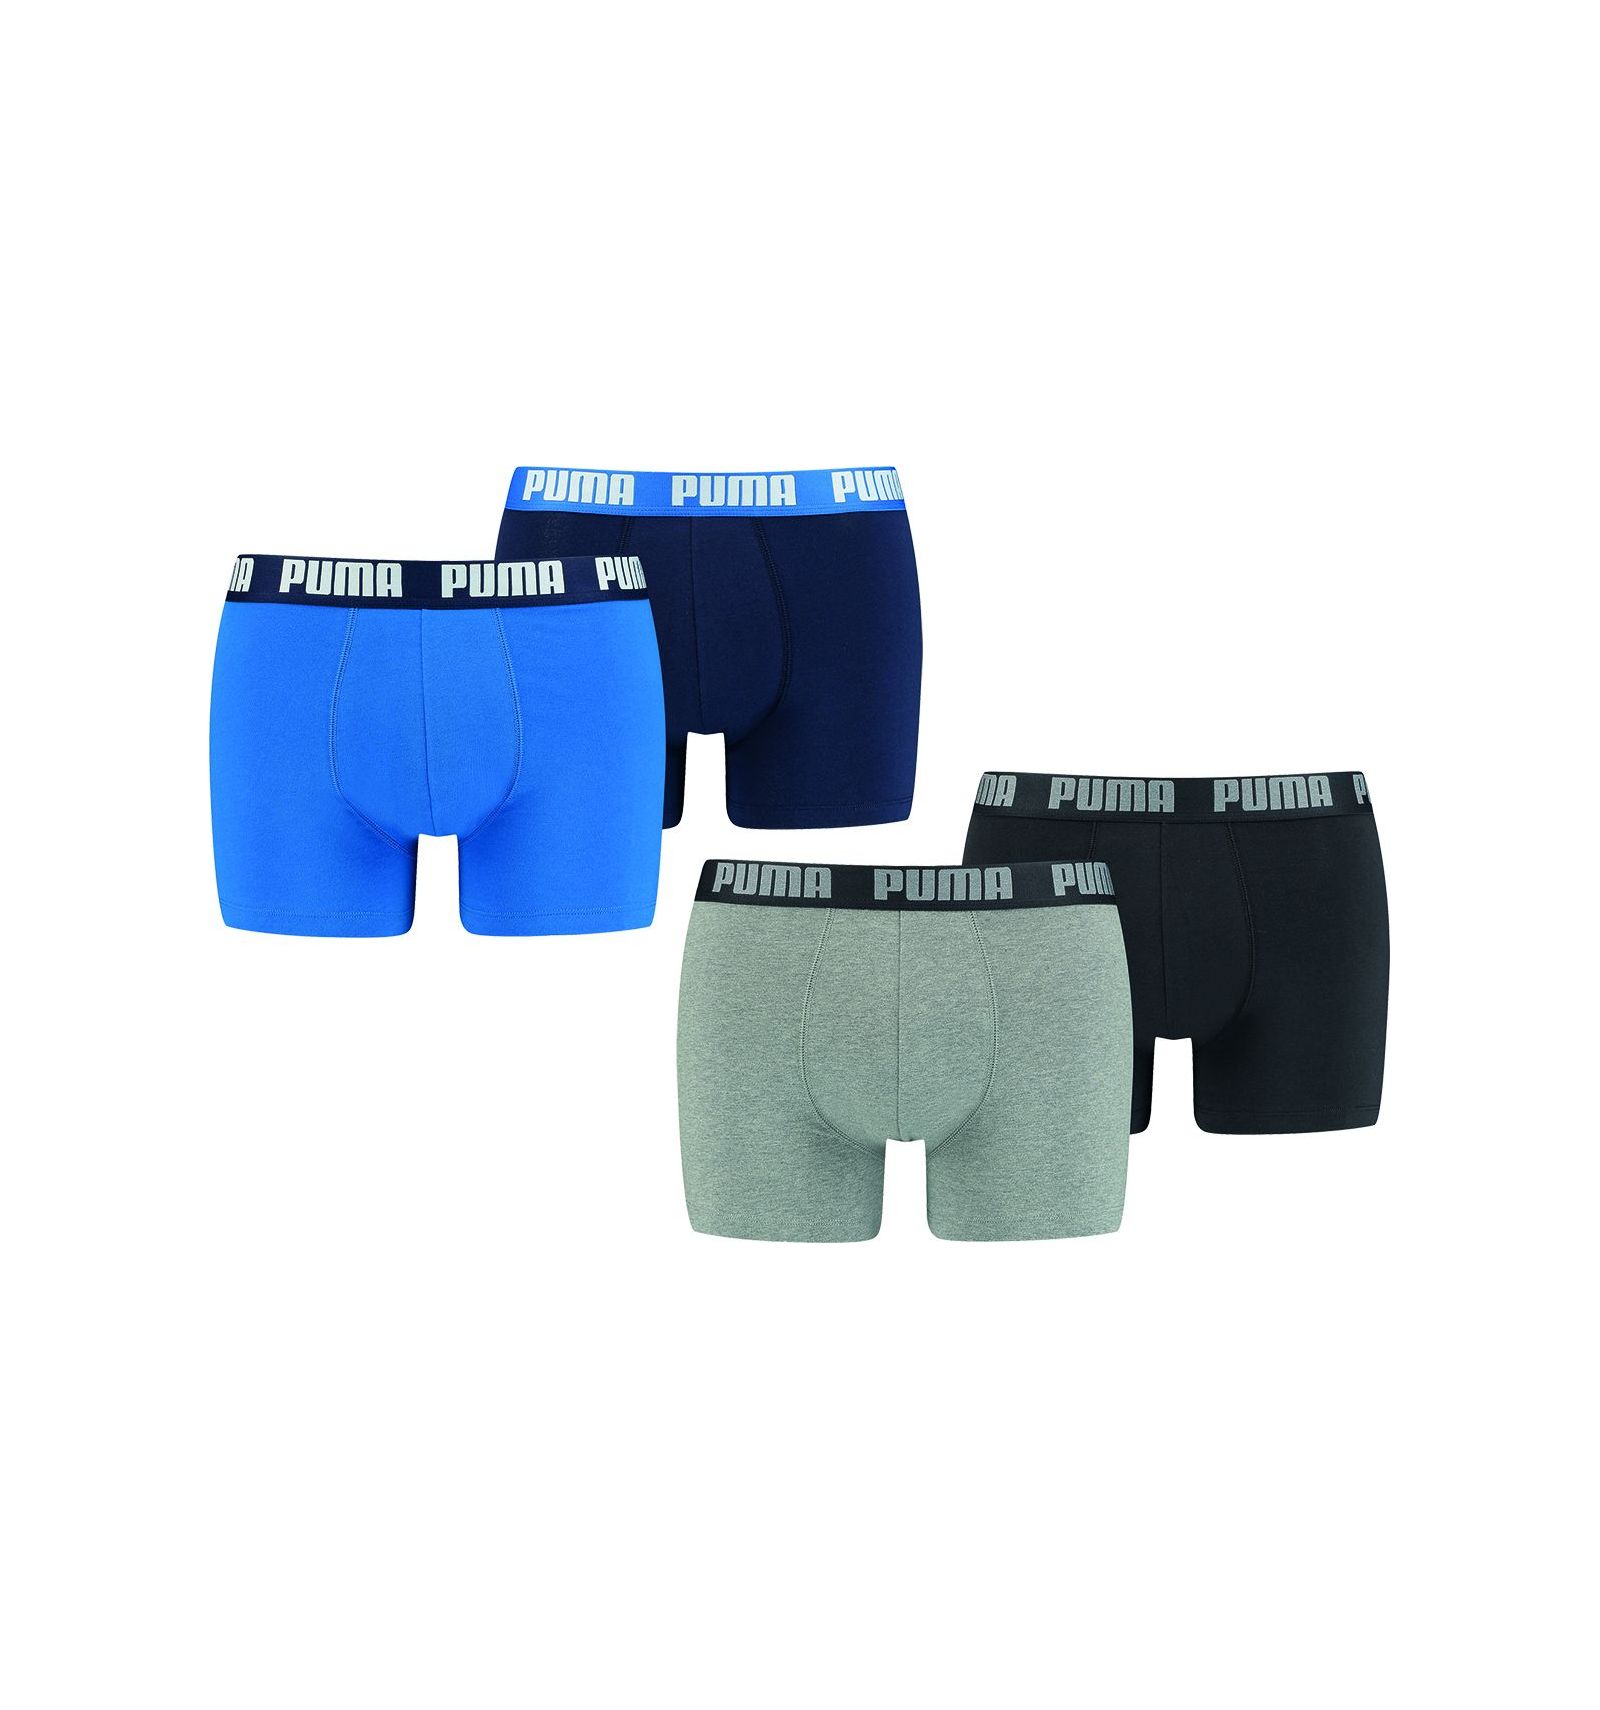 ▷ Boxer basic marino-azul talla xl 2 unidades de puma ®